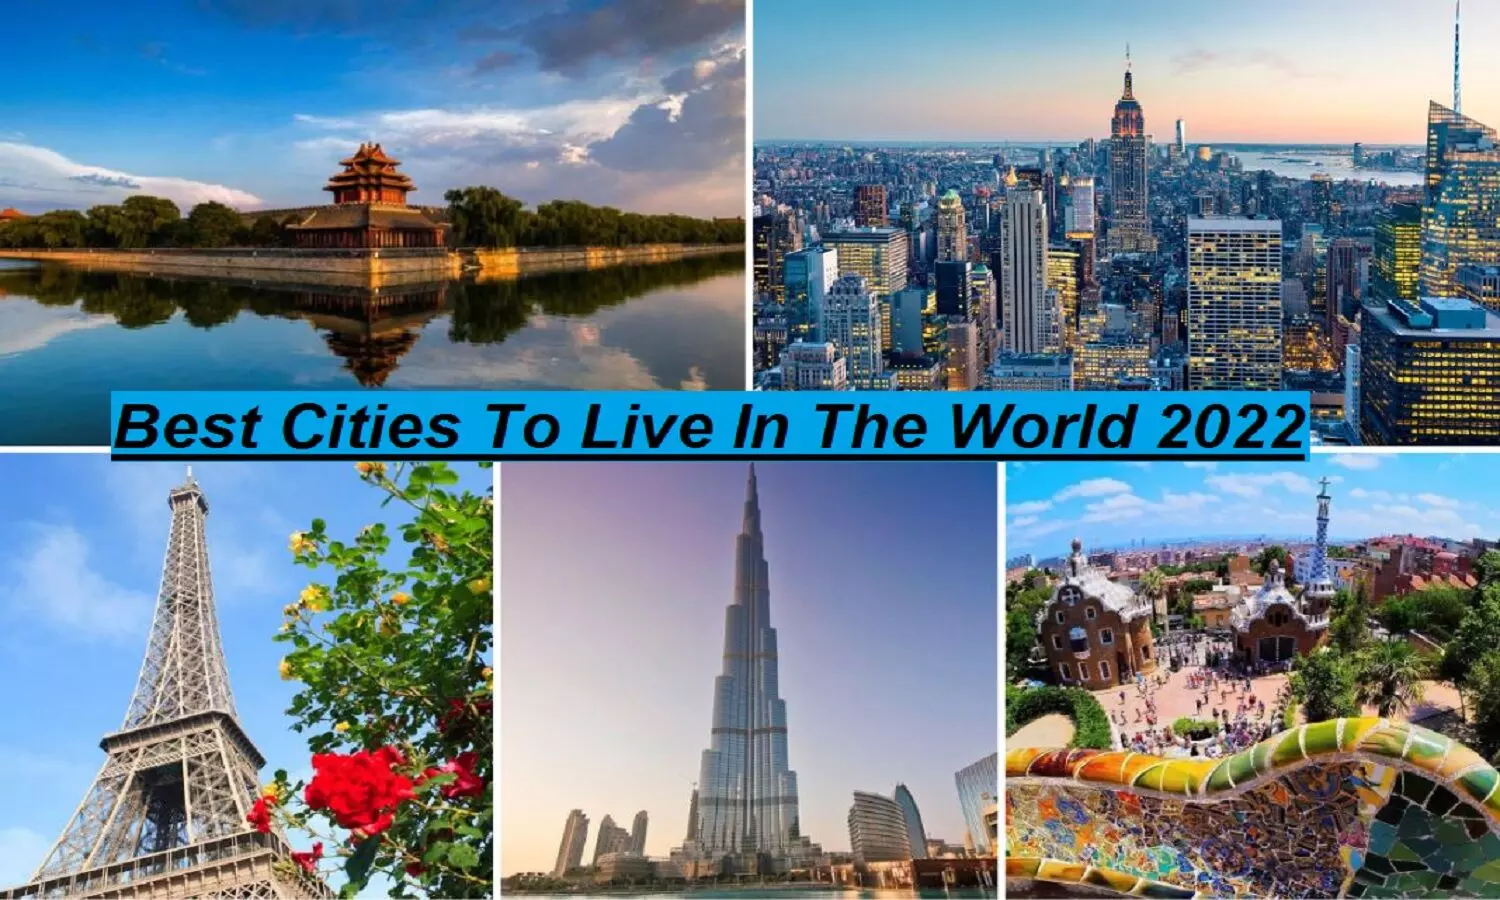 Best Cities To Live In The World: The Economist के अनुसार ये हैं जीने के लिए दुनिया के सबसे अच्छे शहर